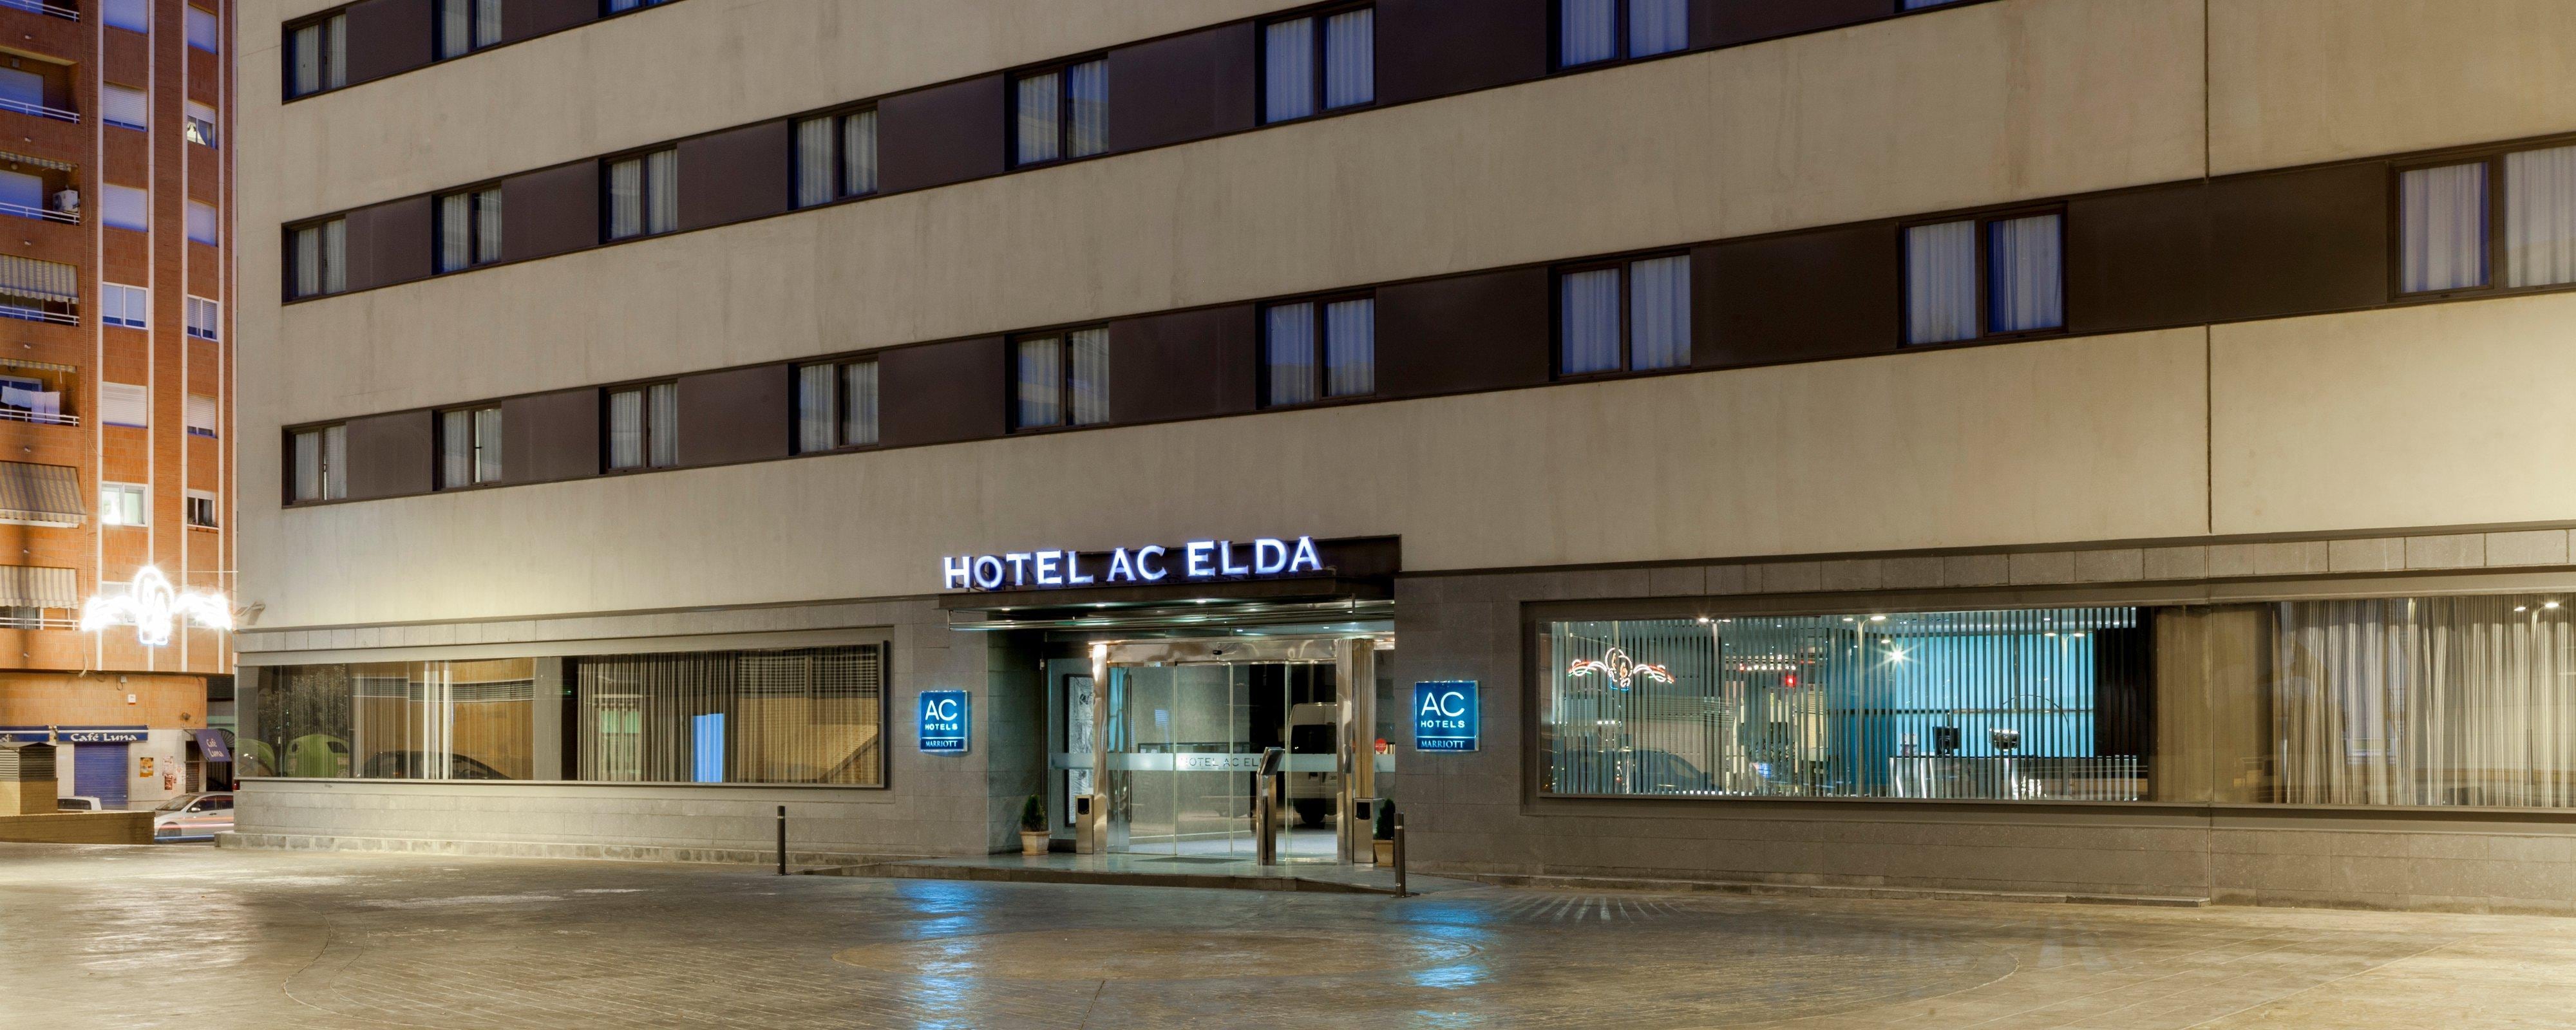 Image for AC Hotel Elda, a Marriott hotel.